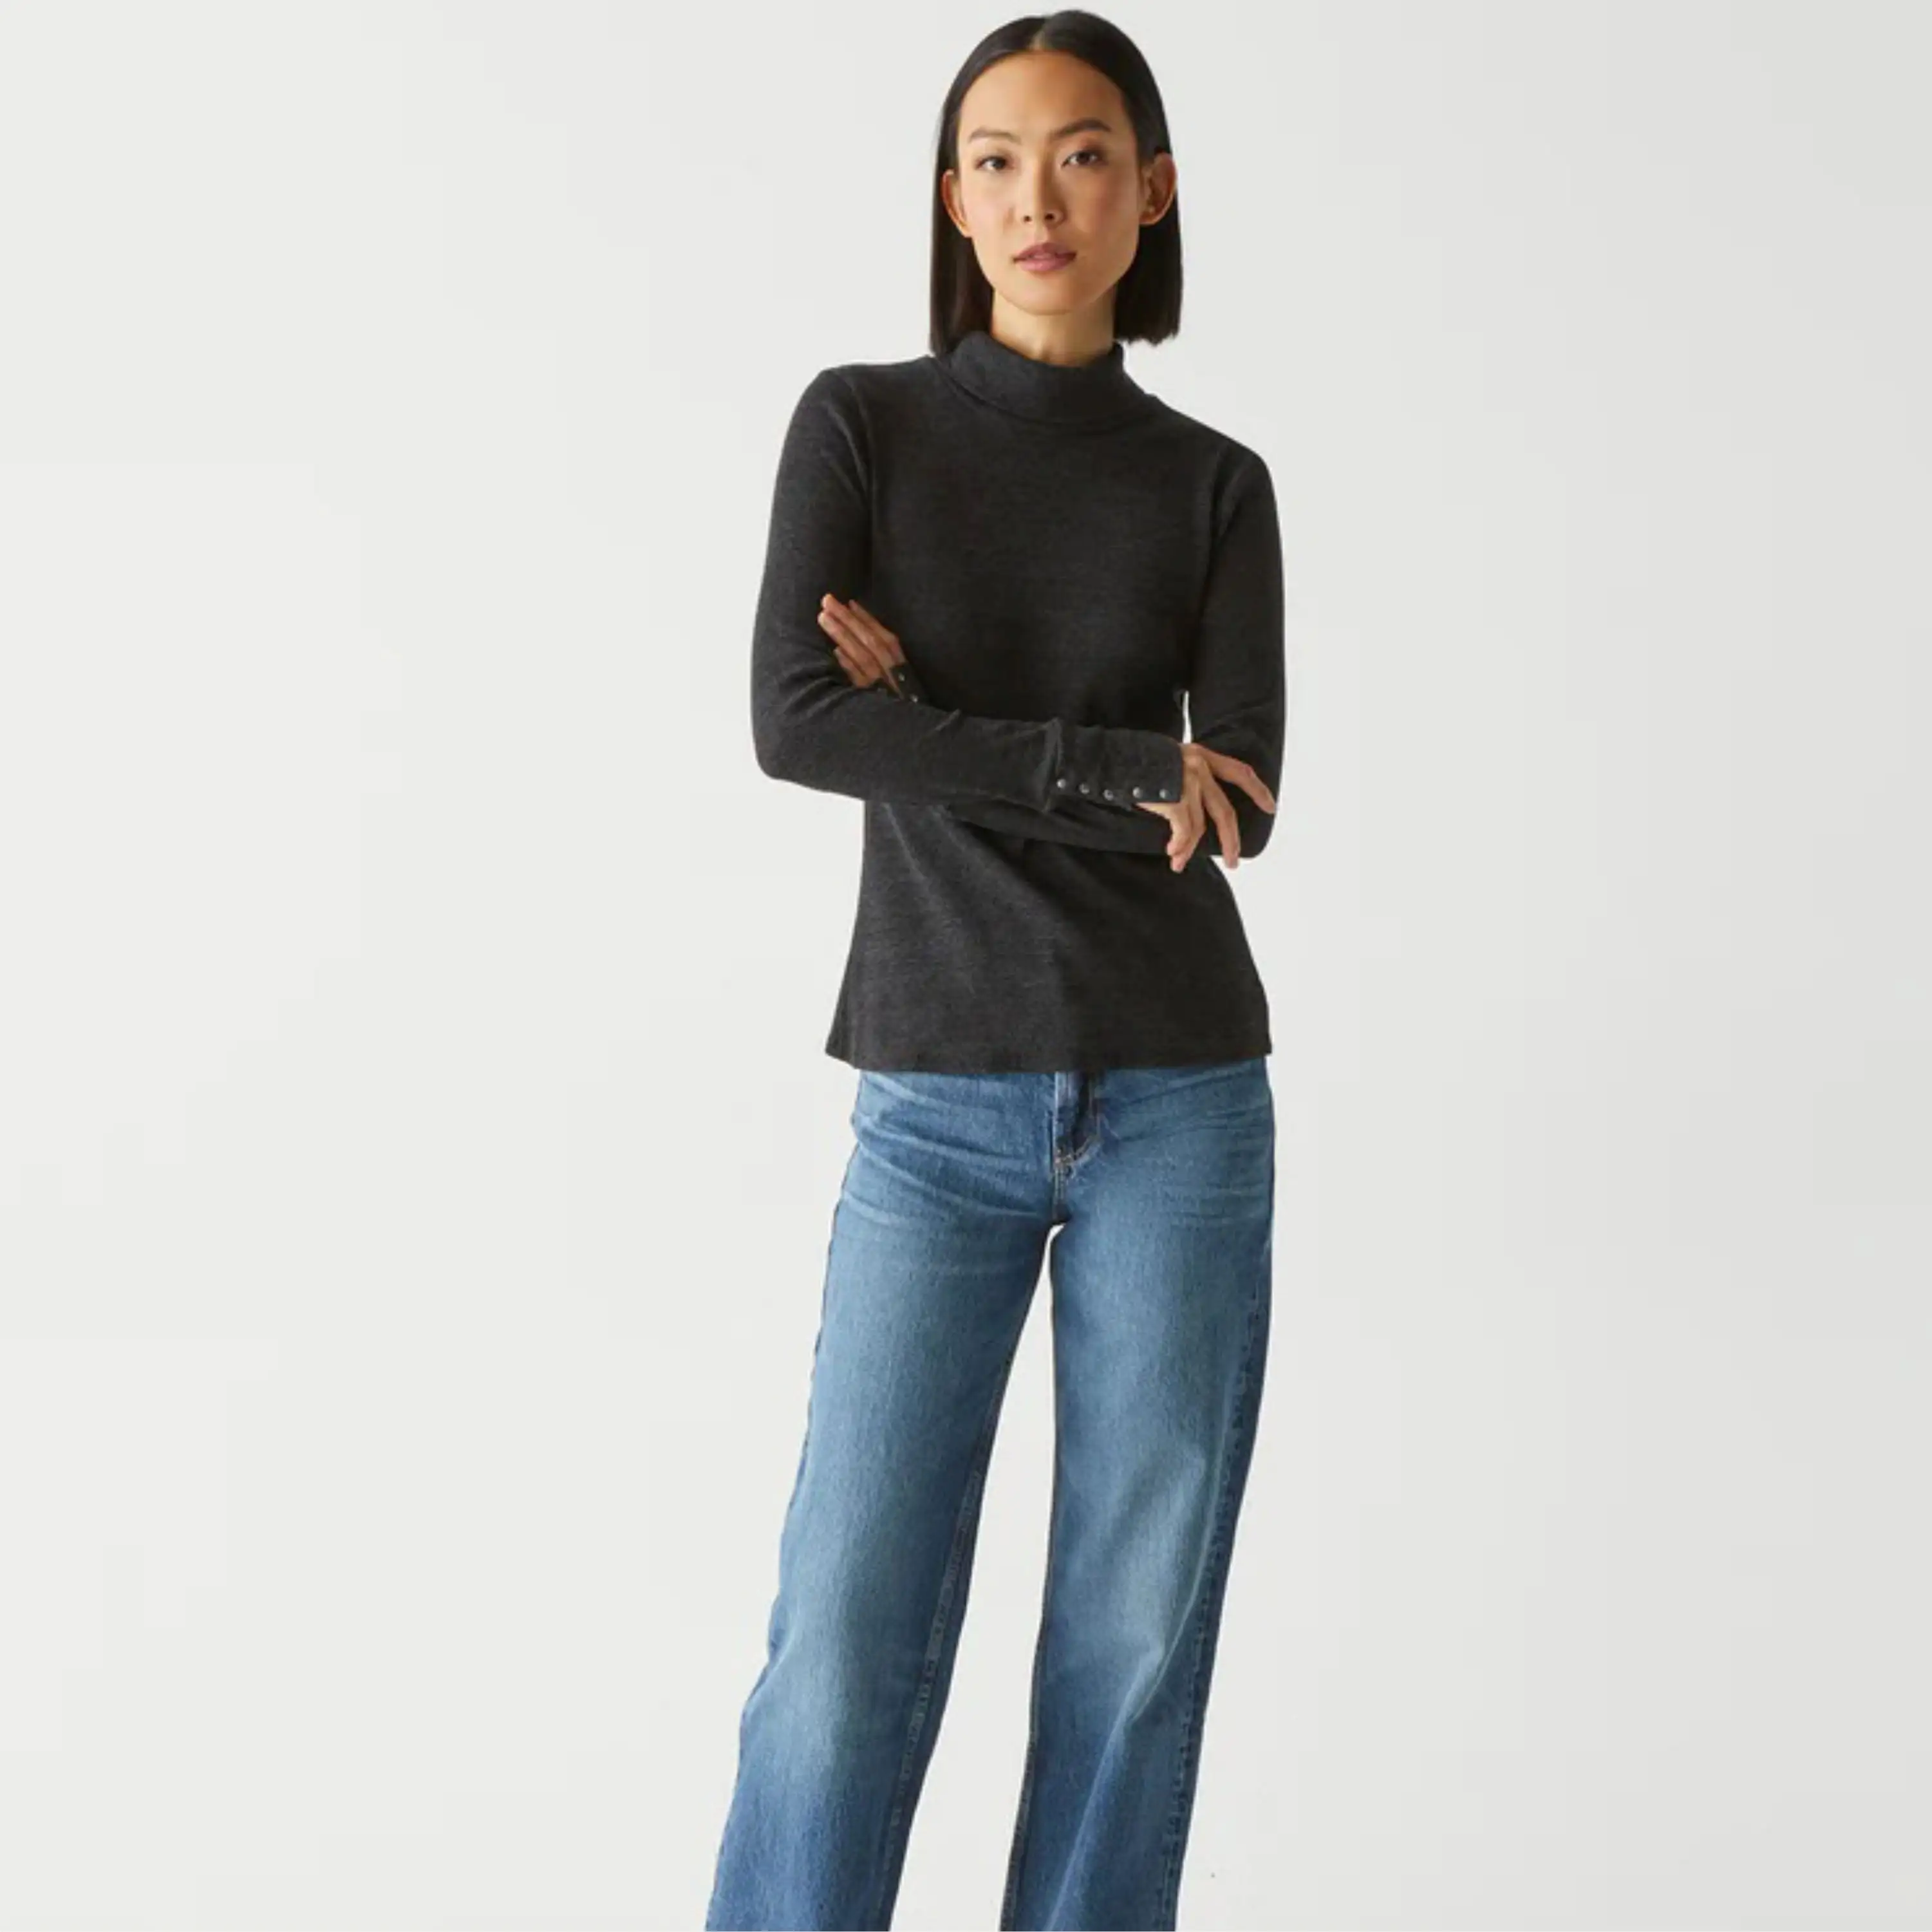 मुलायम कॉटन ब्लेंड में महिलाओं के लिए सुरुचिपूर्ण टर्टलनेक स्वेटर - लंबी आस्तीन, क्लासिक रंगों में उपलब्ध, दैनिक पहनने के लिए बिल्कुल सही